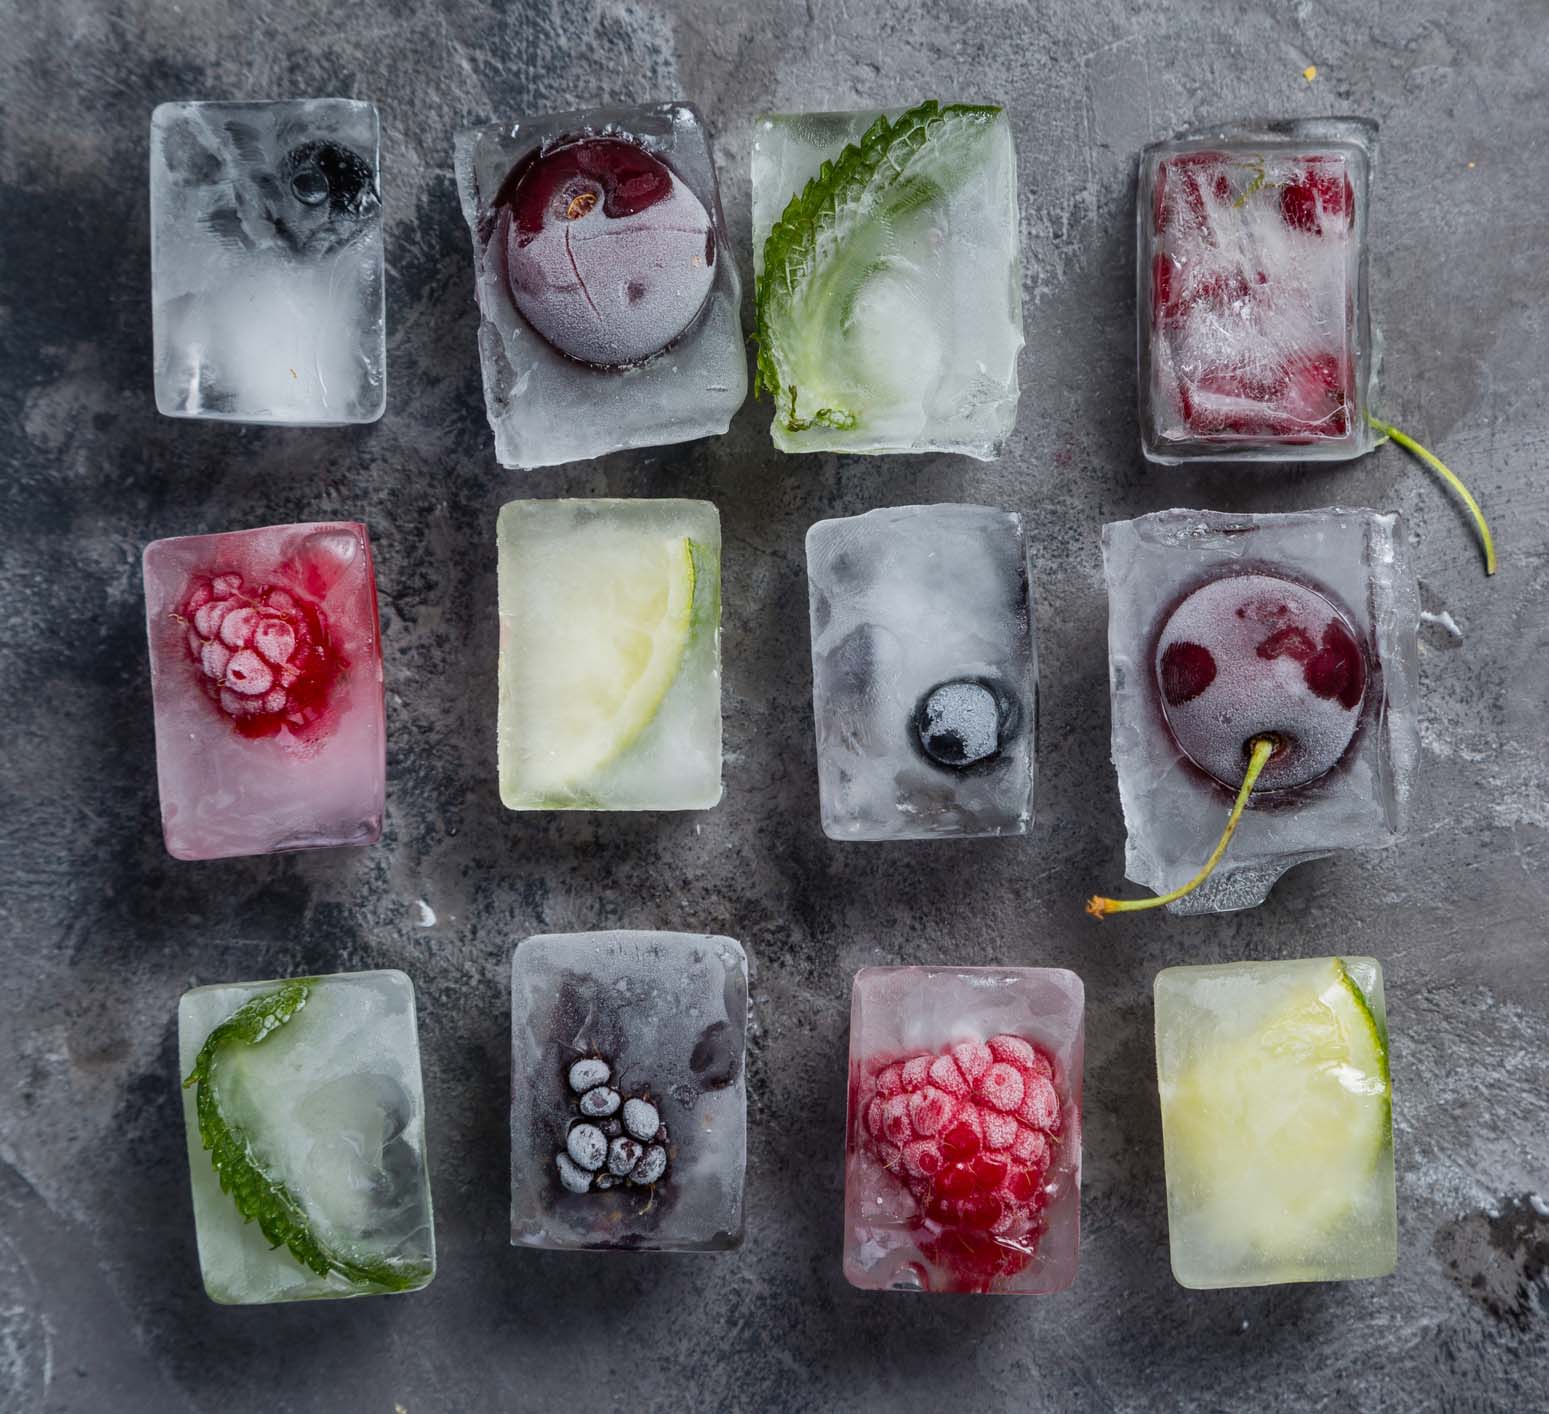 Zamrznjeno sadje